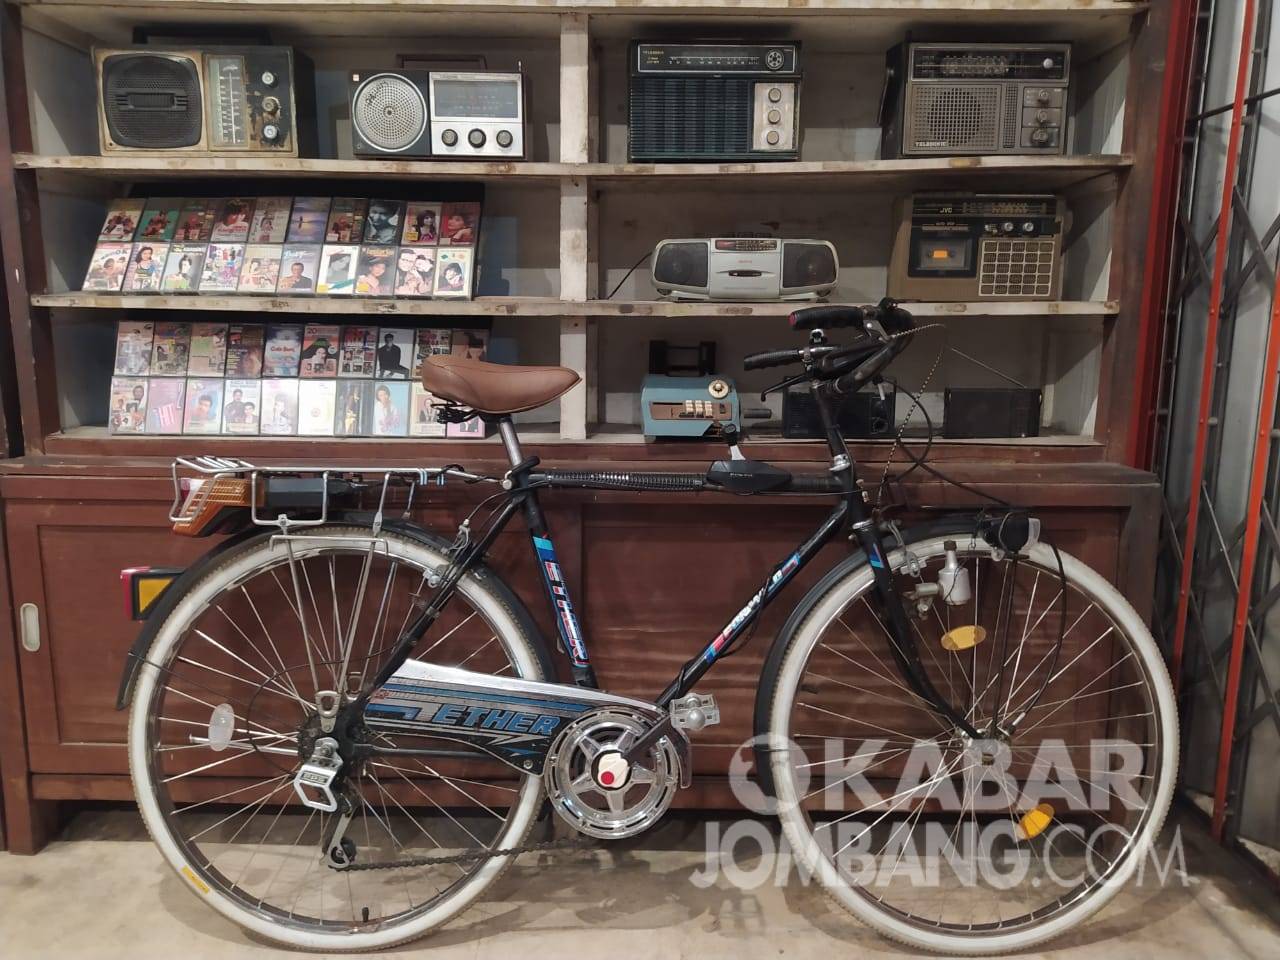 Sepeda kuno buatan Jepang koleksi Singgih Purwo. KabarJombang.com/Diana Kusuma/